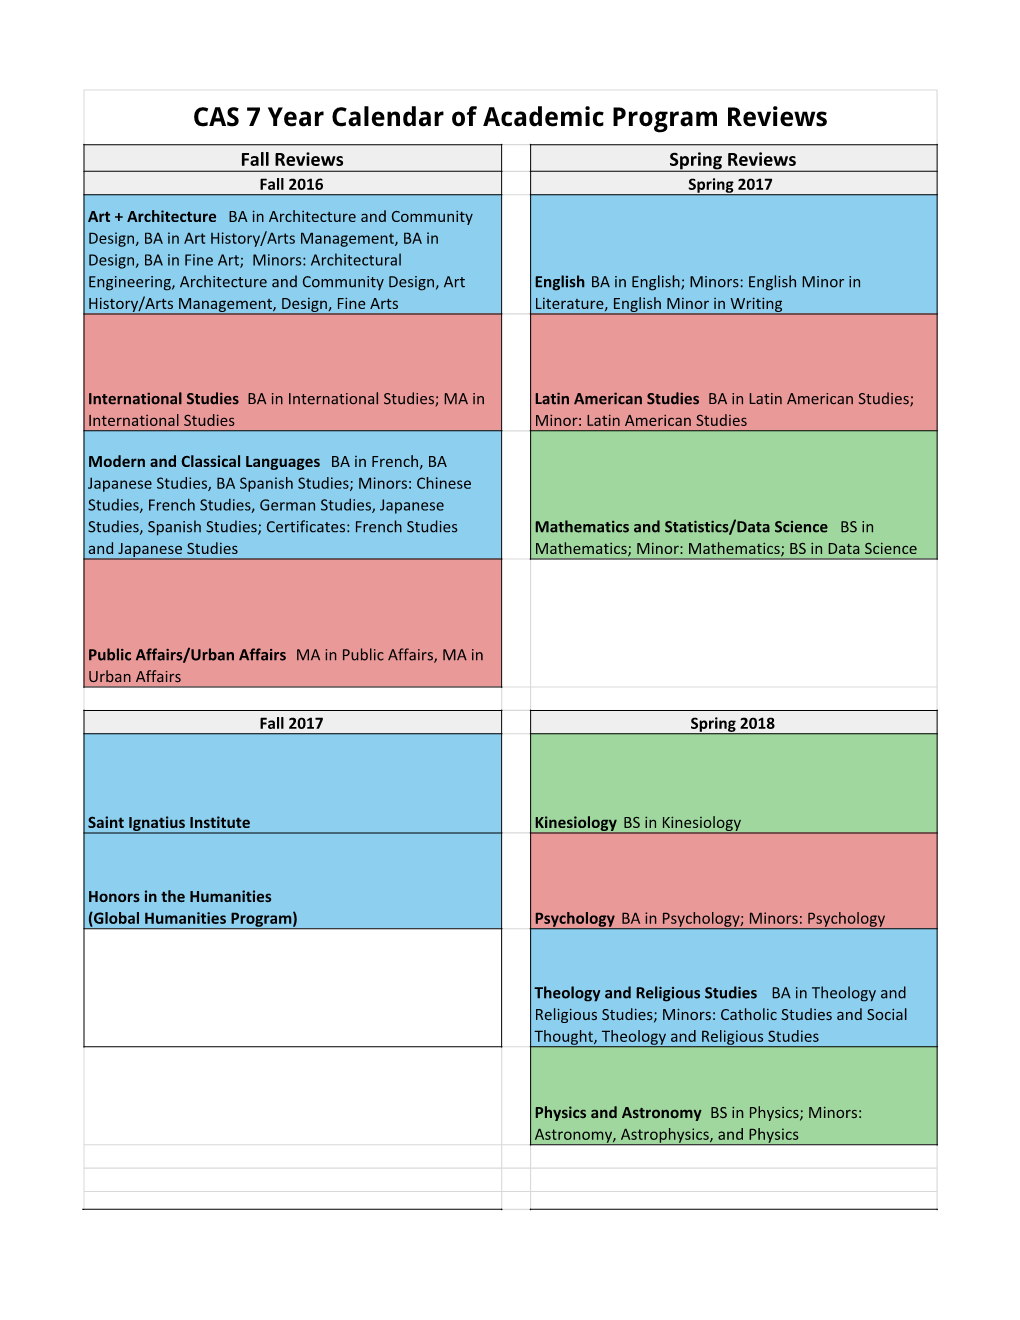 Schedule of Program Reviews